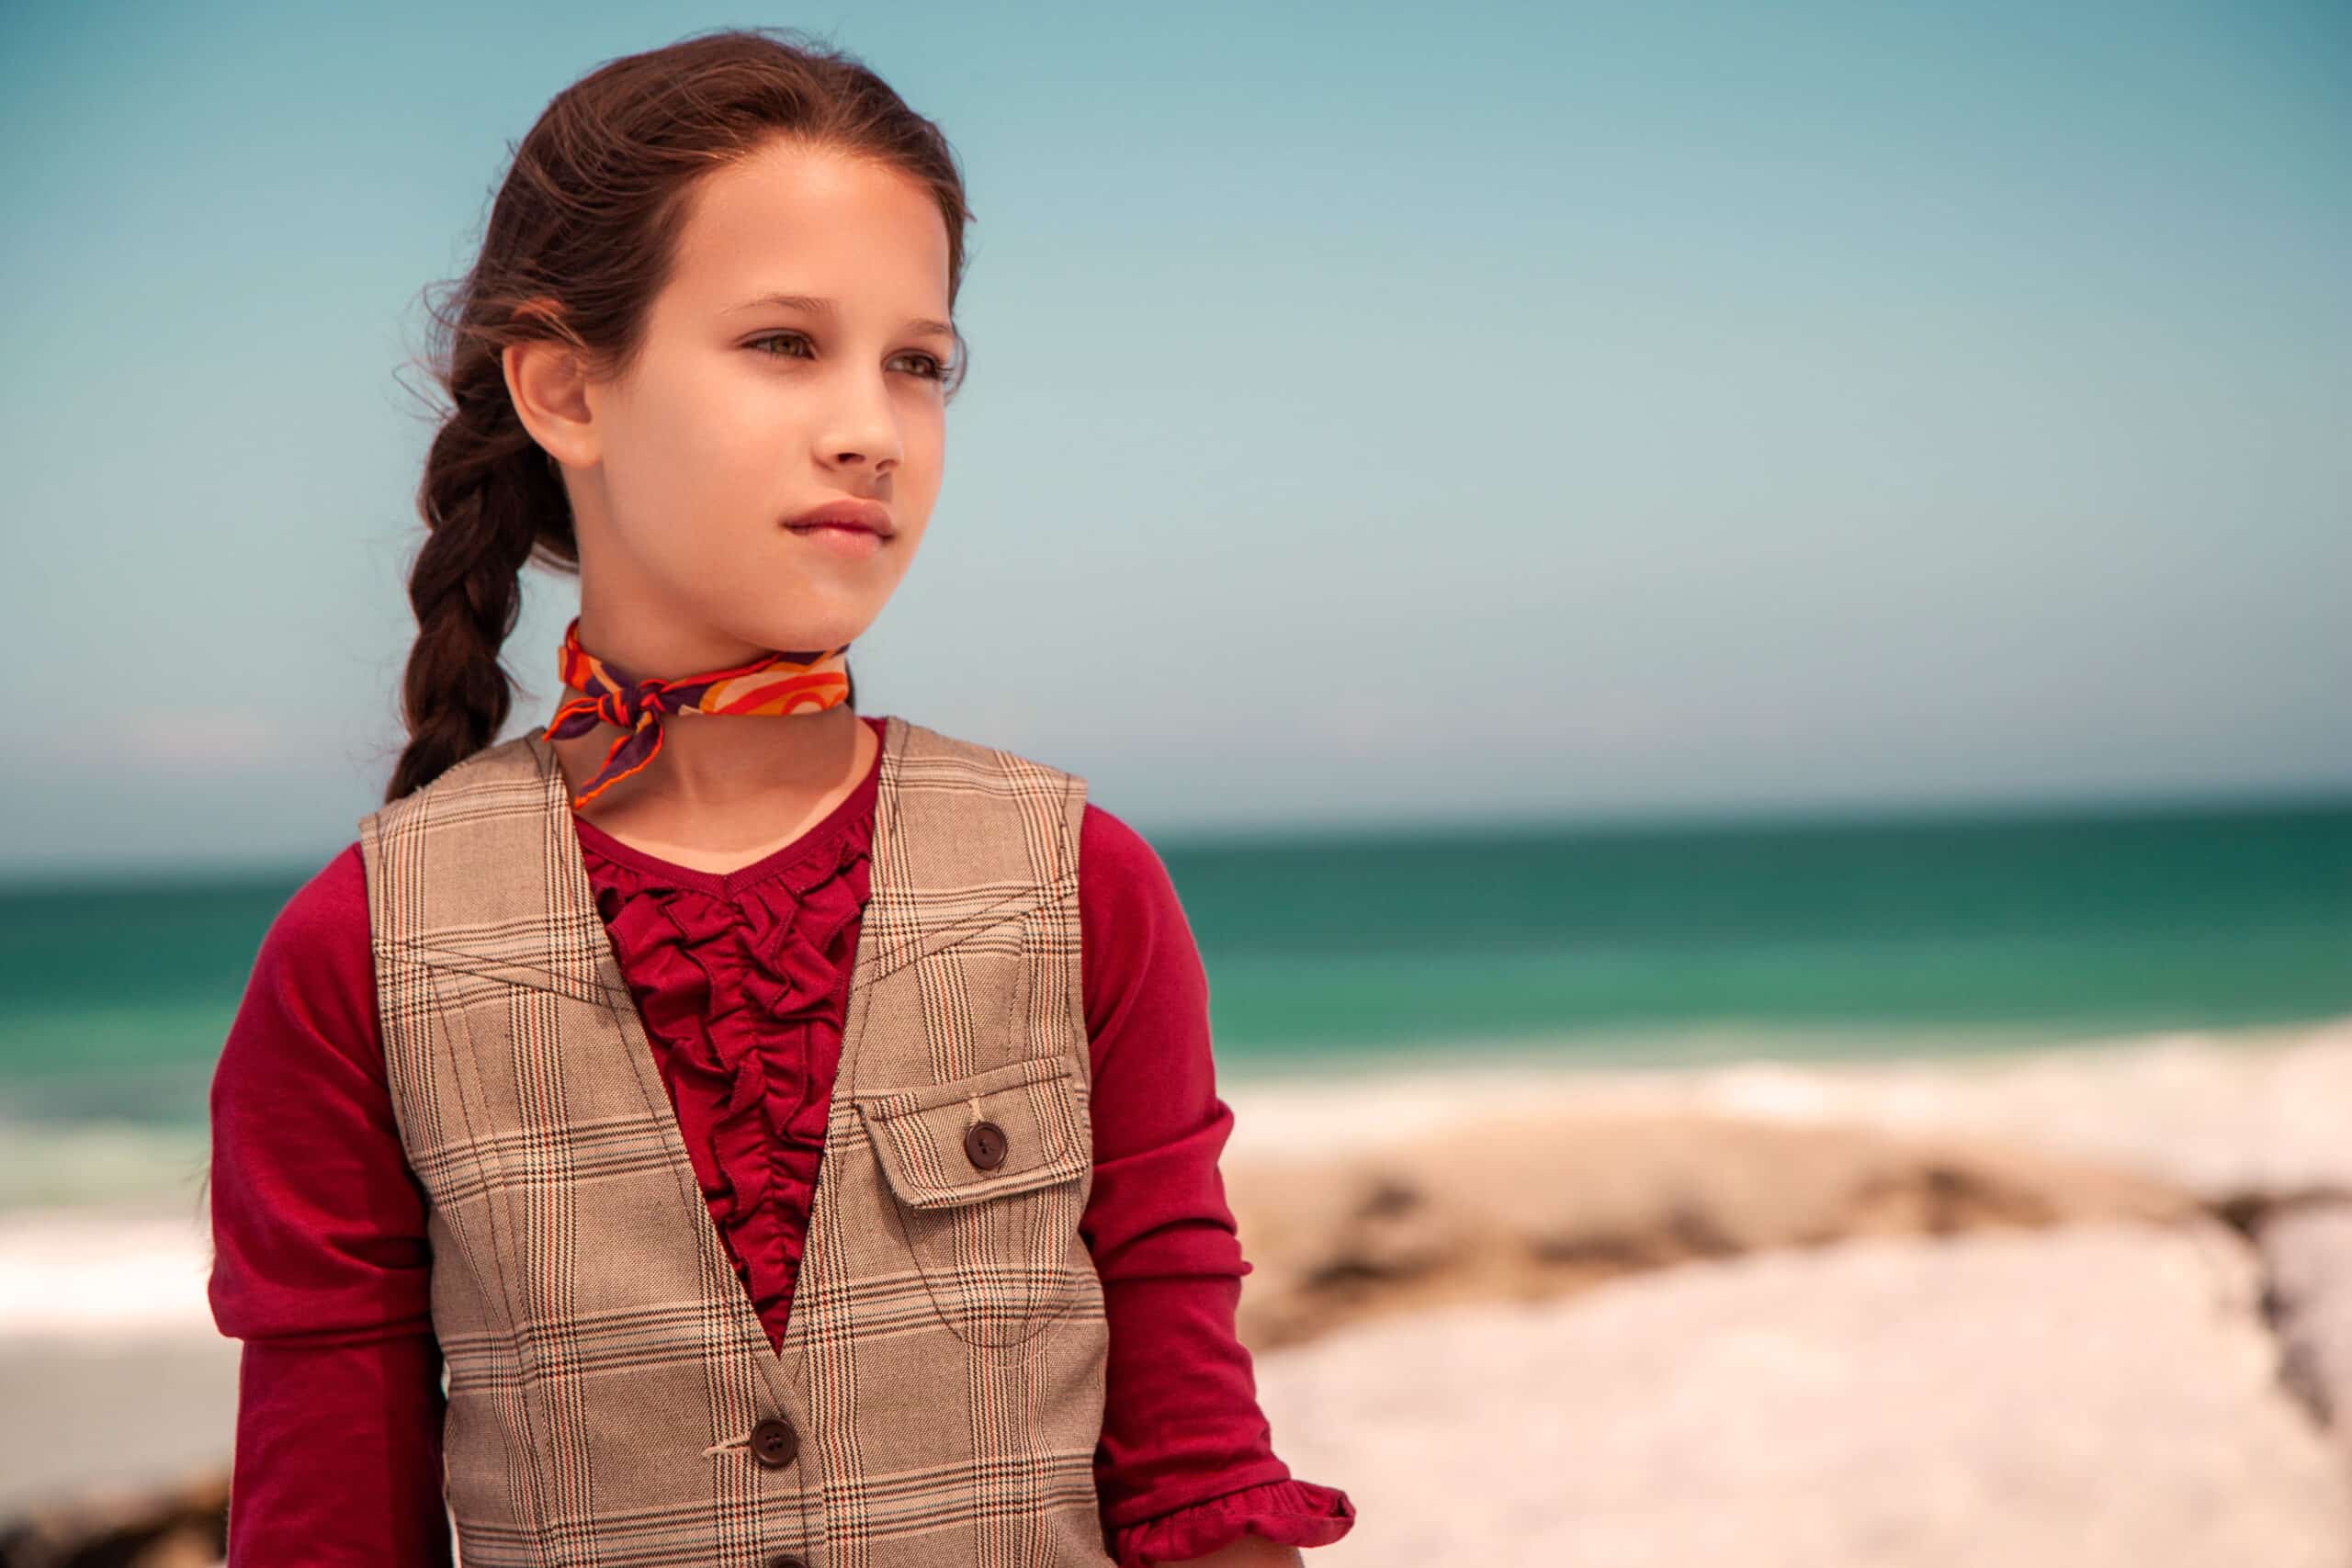 Ein junges Mädchen mit einem seitlichen Zopf, einer Tweedweste und einer roten Bluse steht nachdenklich an einem Strand mit dem Meer im Hintergrund. © Fotografie Tomas Rodriguez